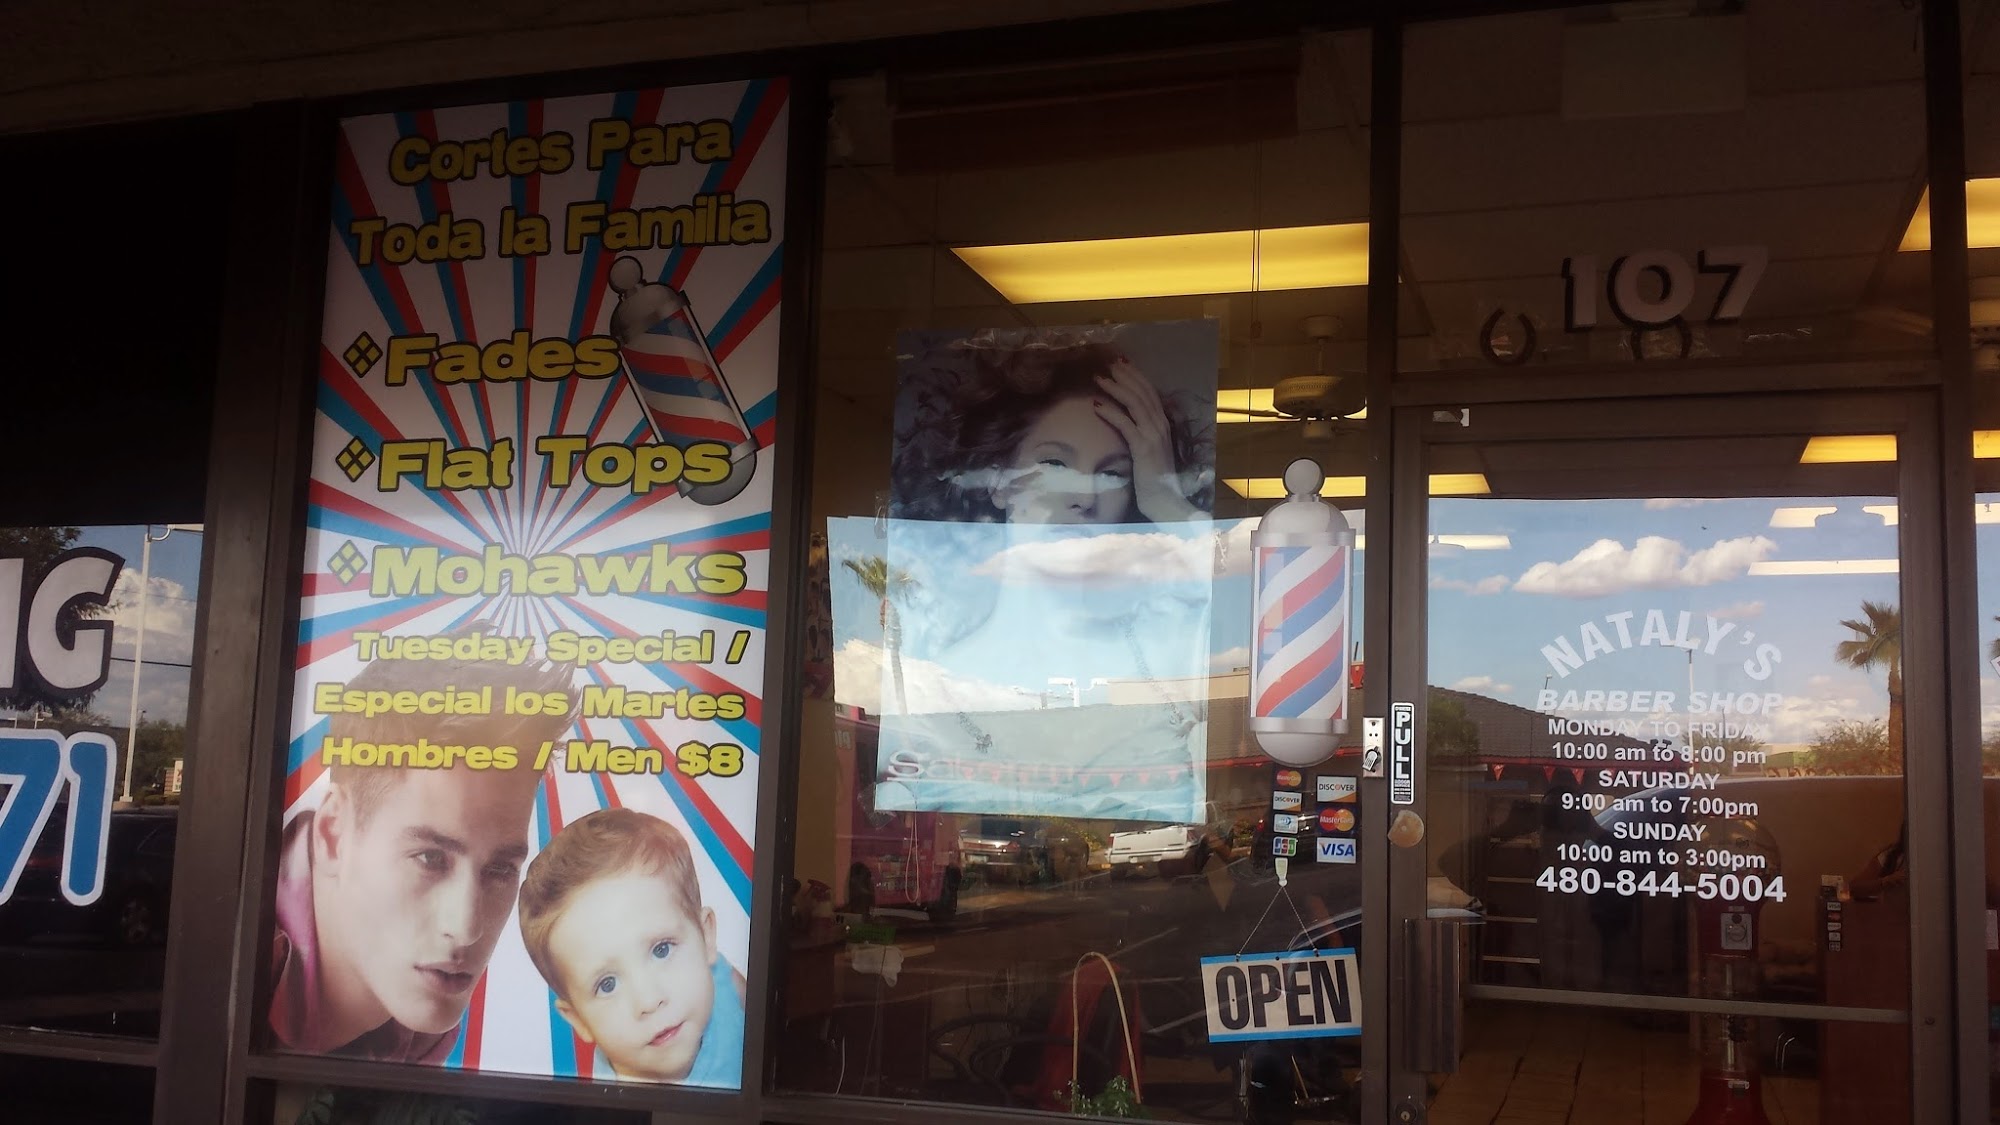 Nataly's barber shop